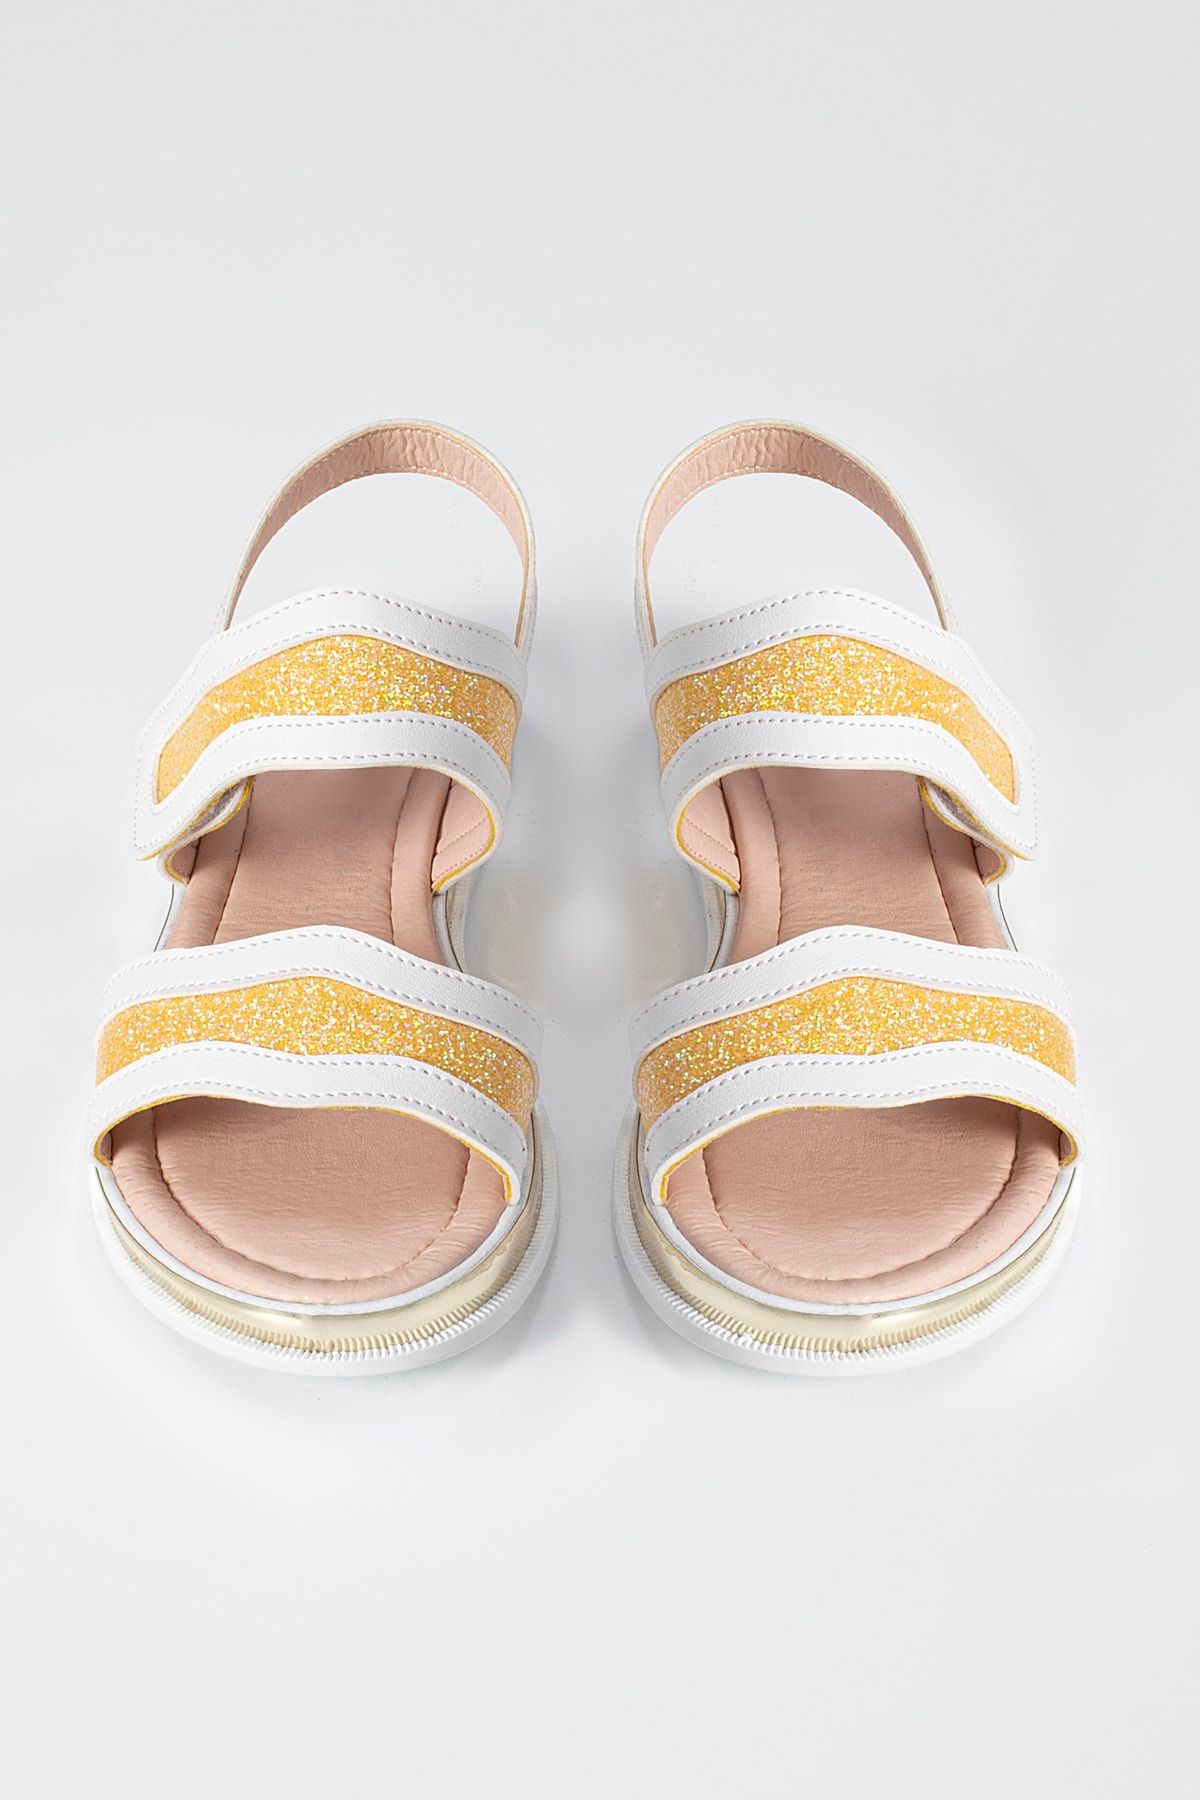 ZENOKIDO Gold Beyaz Kız Çocuk Sandalet